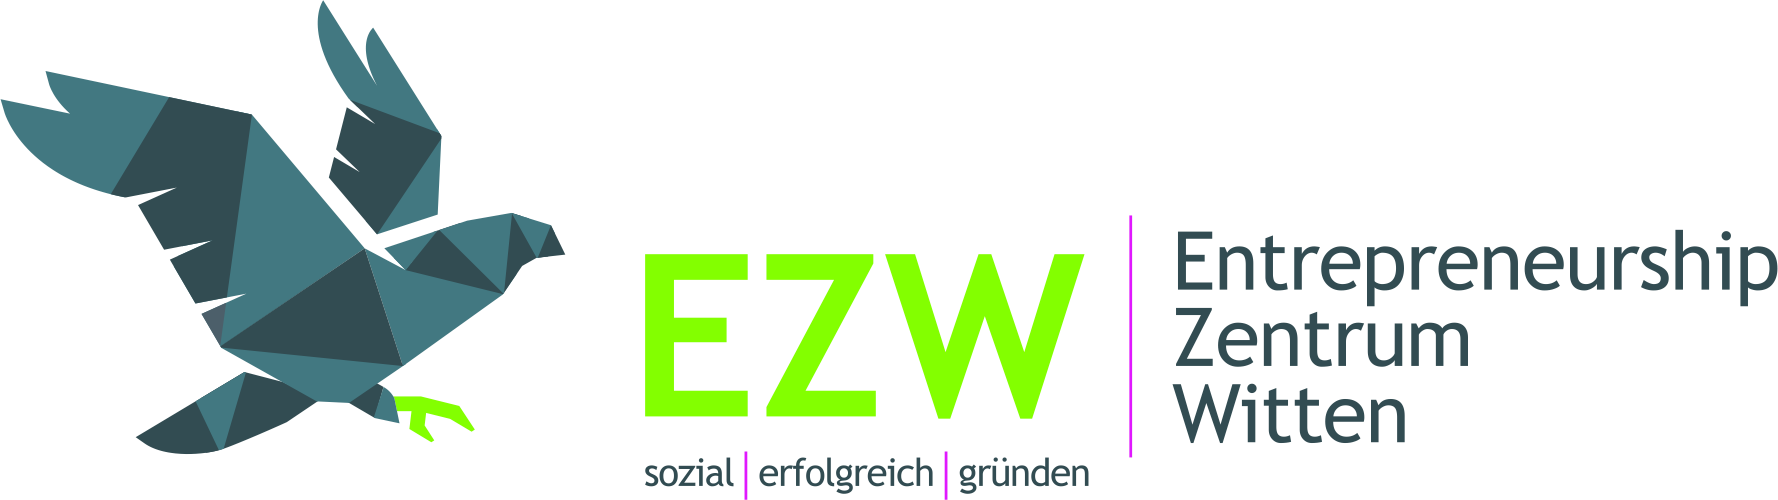 EZW - Entrepreneurship Zentrum Witten